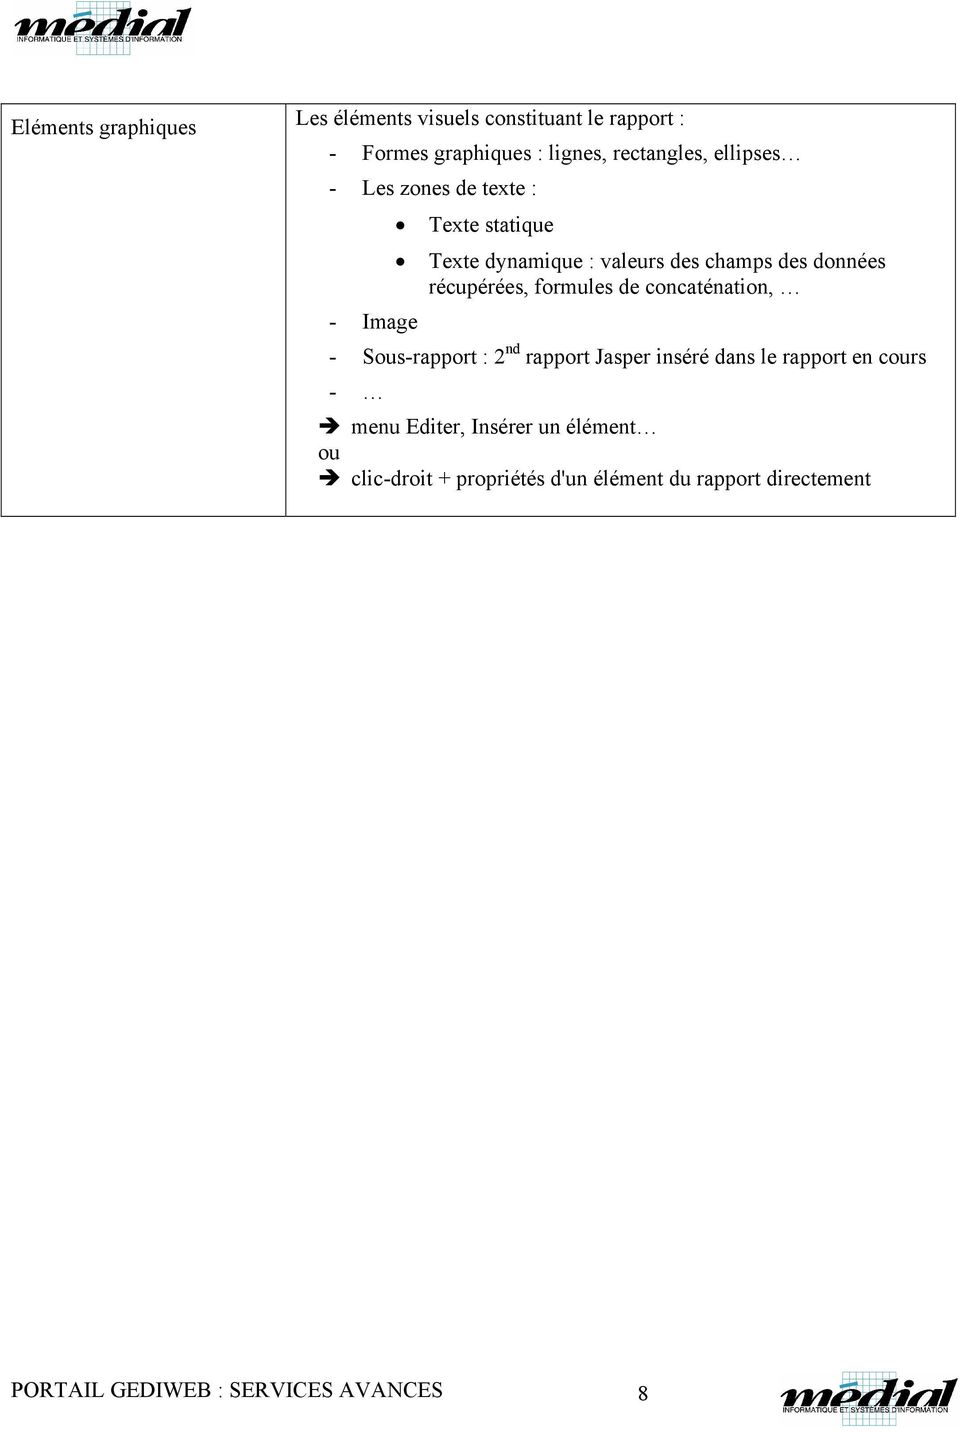 formules de concaténation, - Image - Sous-rapport : 2 nd rapport Jasper inséré dans le rapport en cours - menu